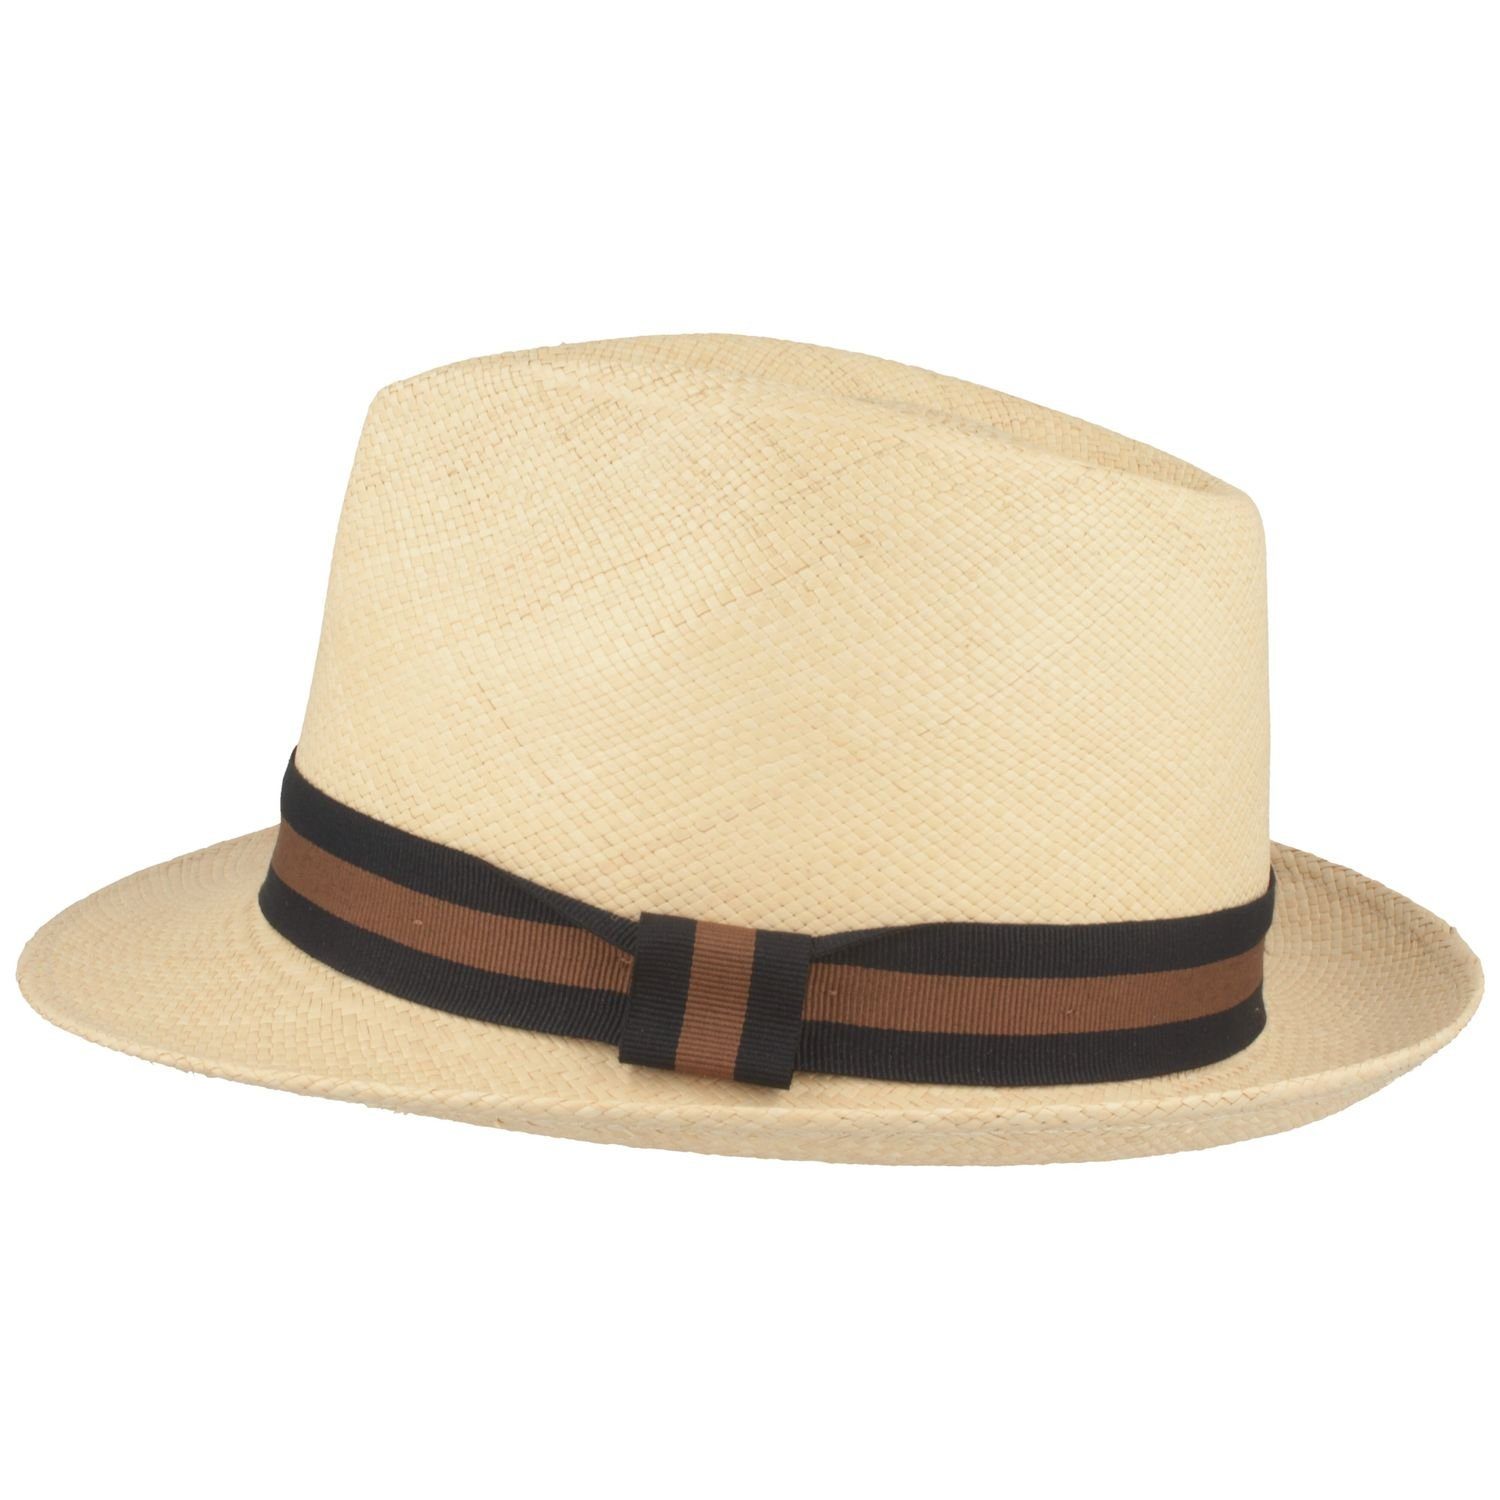 mit natur UV-Schutz Panama Strohhut Hut Breiter 50+ Garnitur moderner Trilby